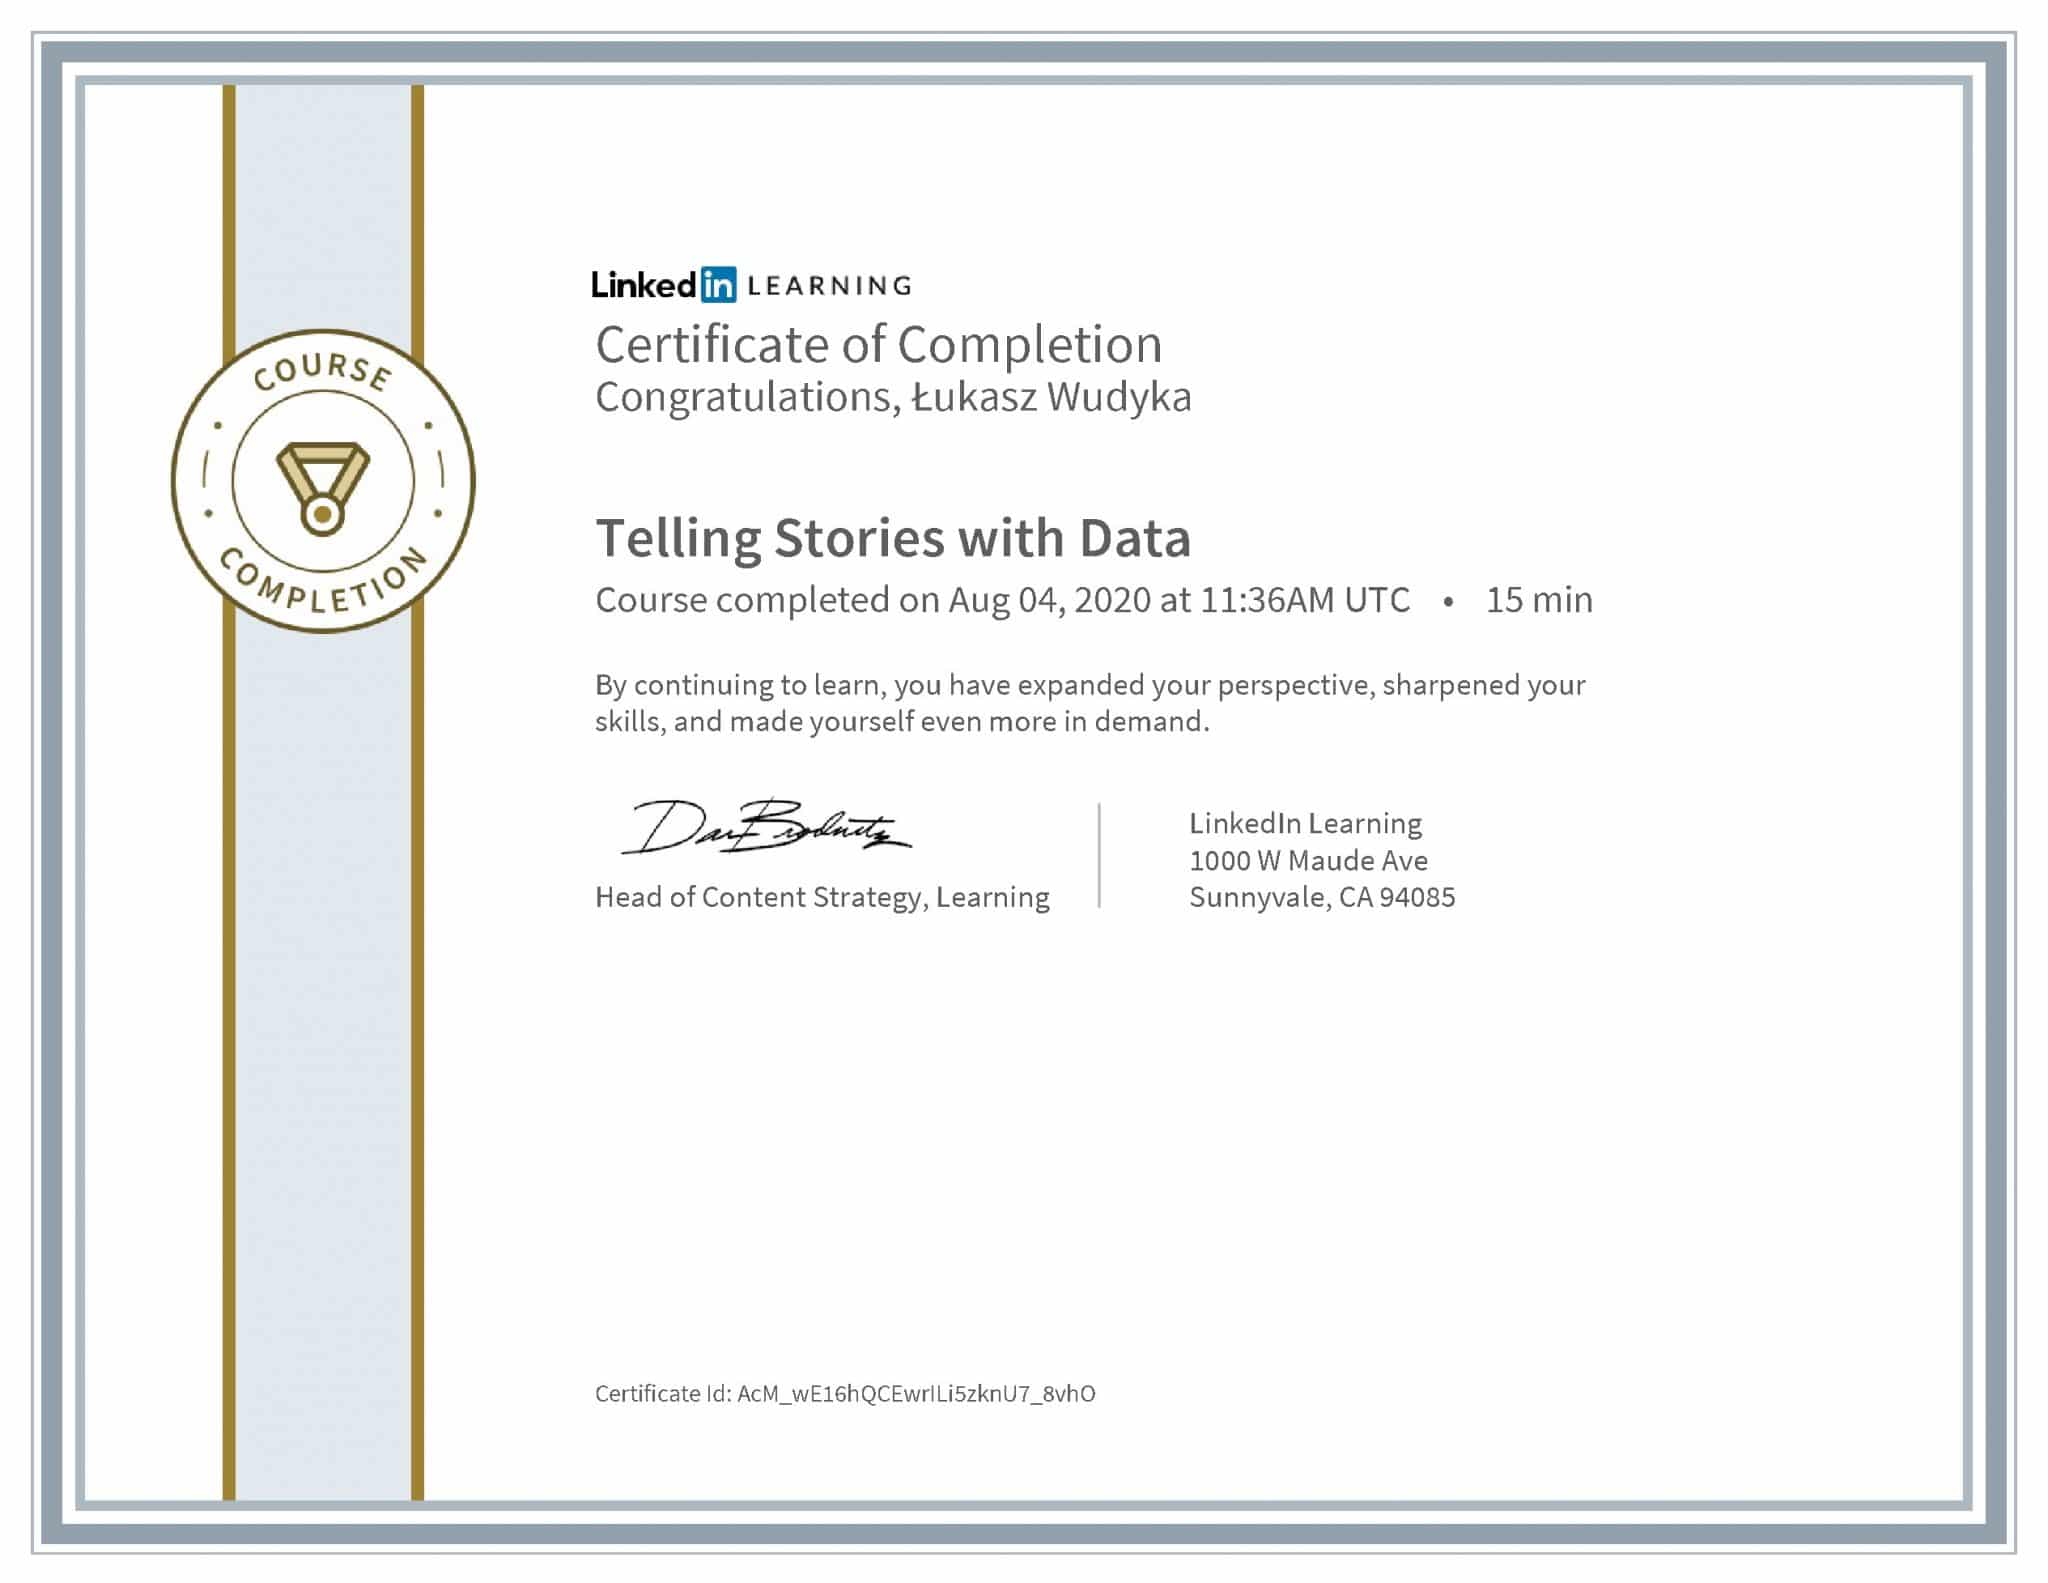 Łukasz Wudyka certyfikat LinkedIn Telling Stories with Data